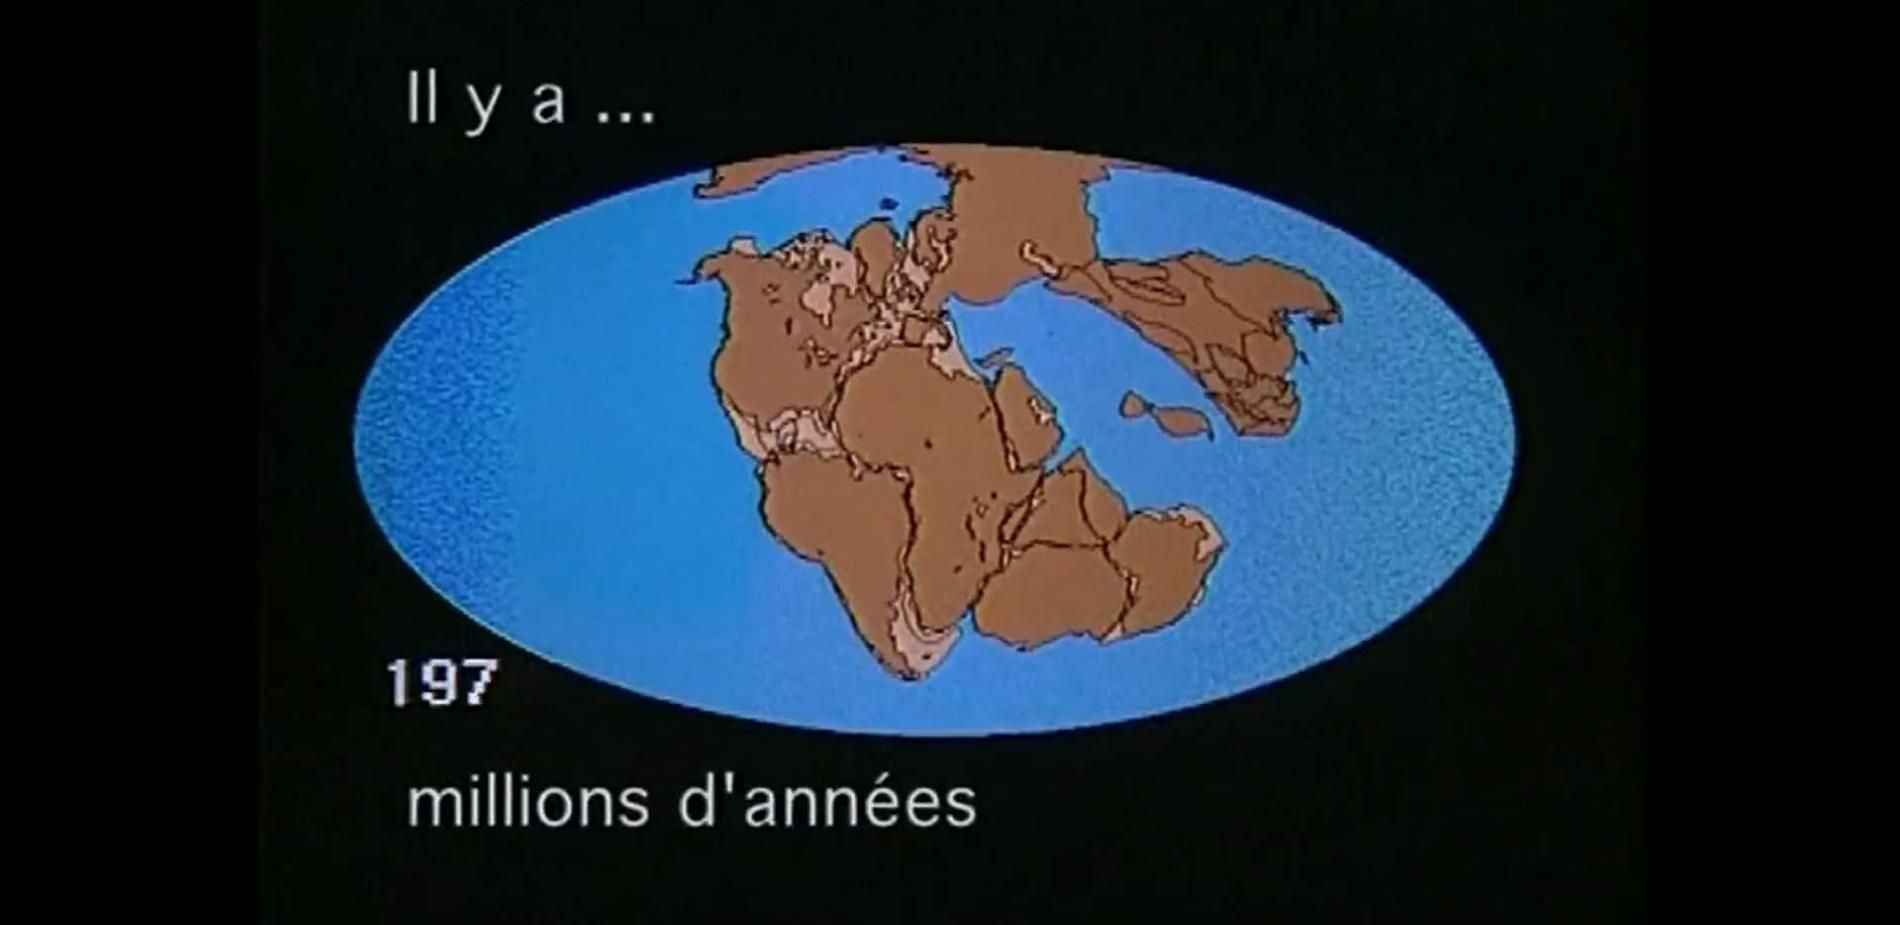 La dérive des continents depuis 200 millions d'années